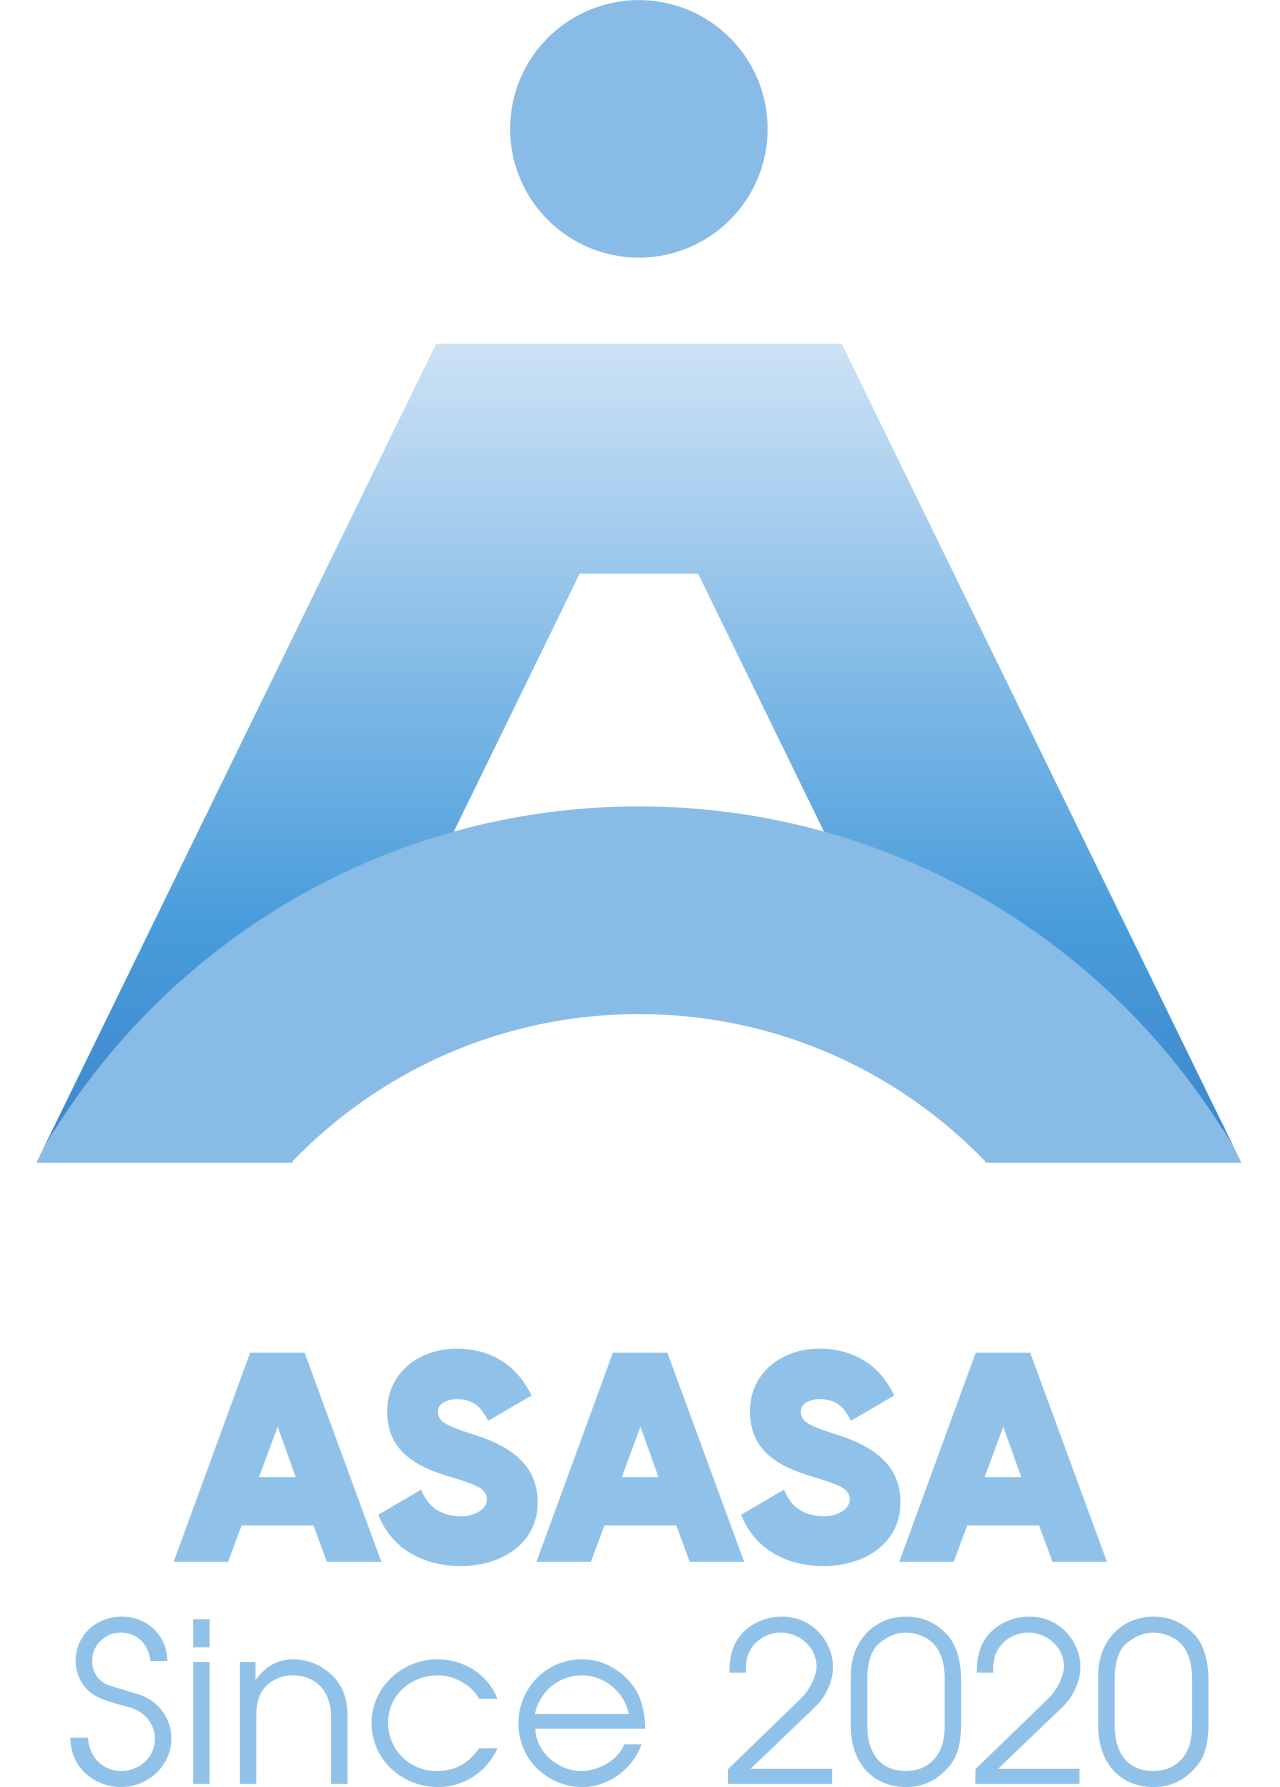 asasa's logo